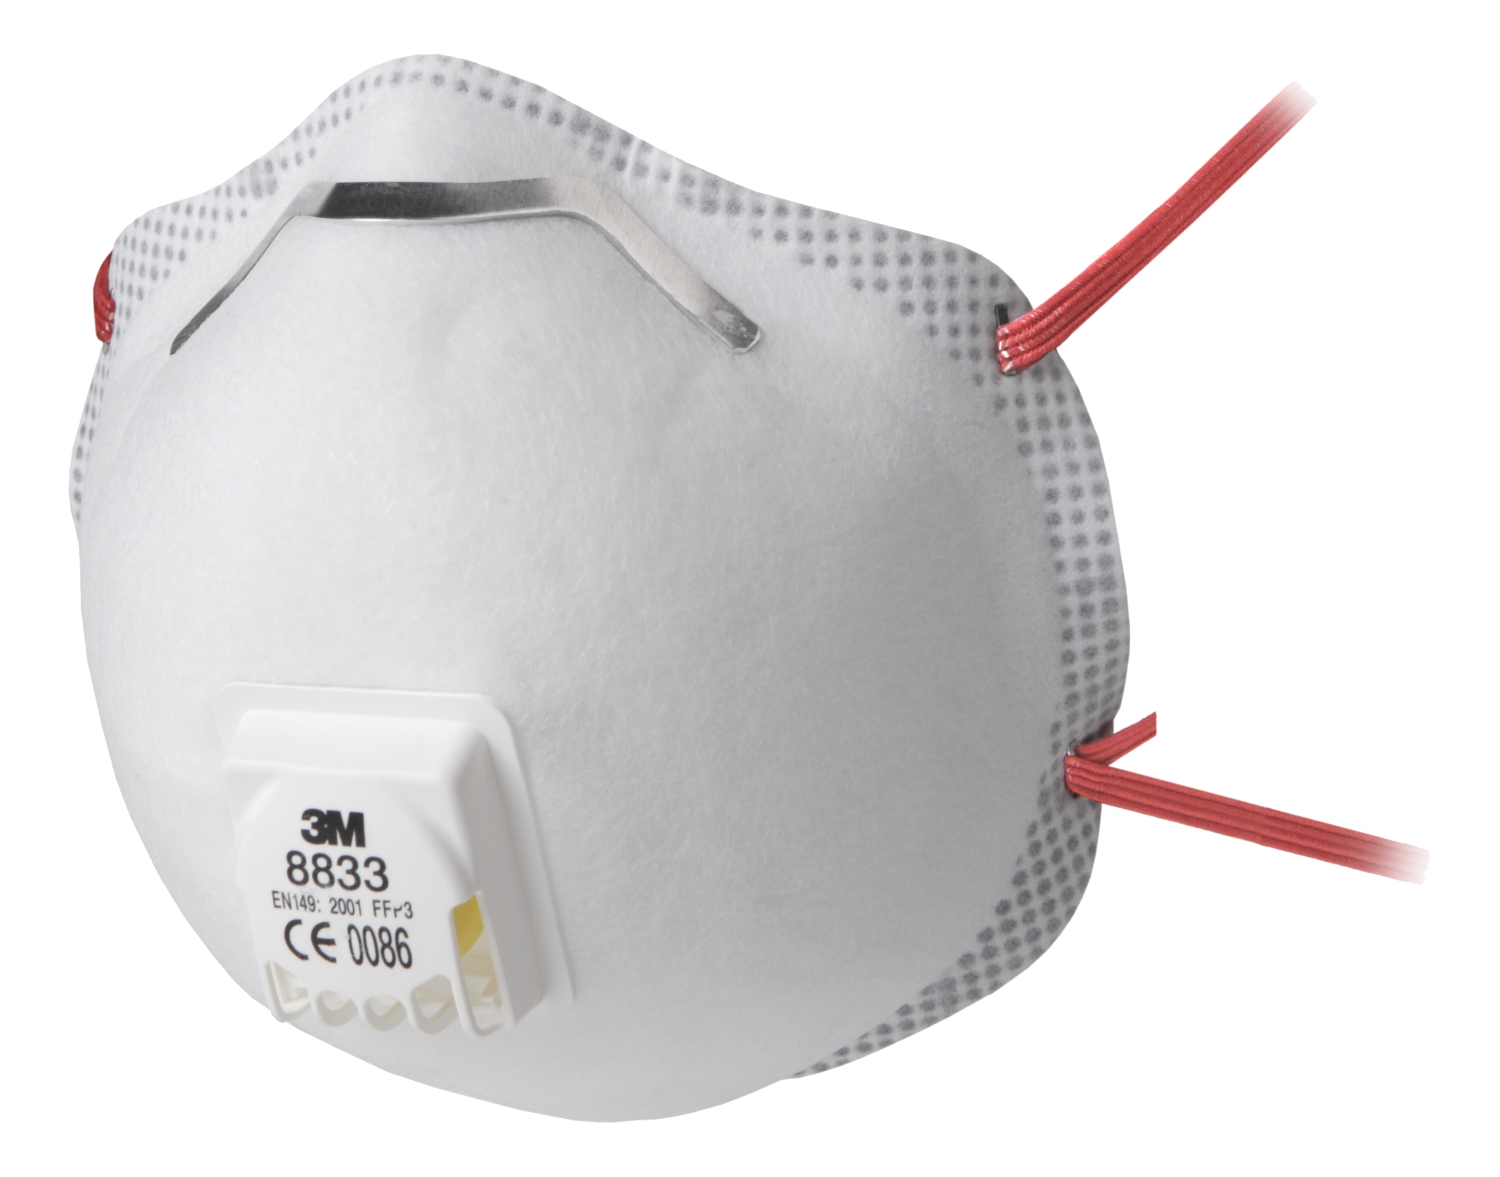 50 PACK Masque jetable Masques faciaux Masque de sécurité anti-poussière  pour la santé personnelle 3 couches boucle d'oreille 